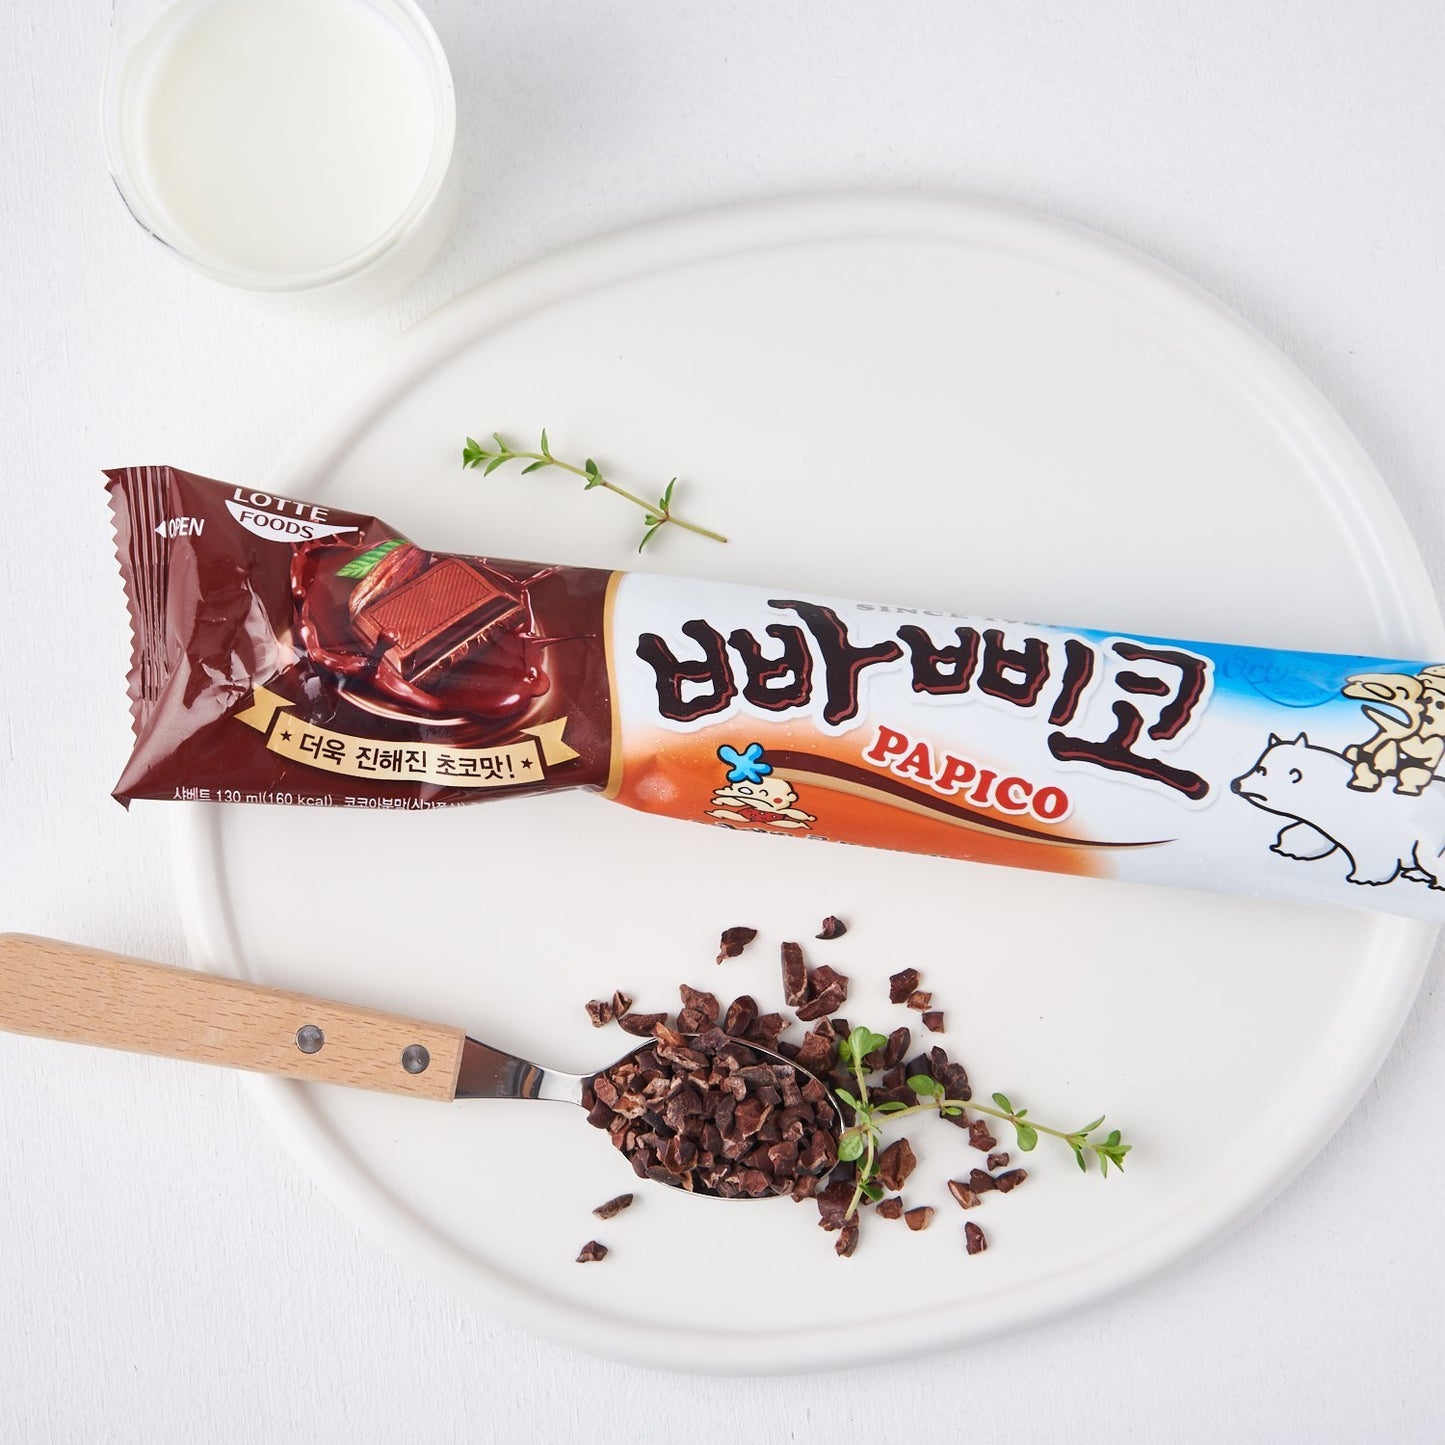 سيت - مجموعة شوكلاته الكوريه عليها ترند قوي 5 قطع   | (SET) Lotte Confectionery children's snack dessert Papico Choco (5 pieces )